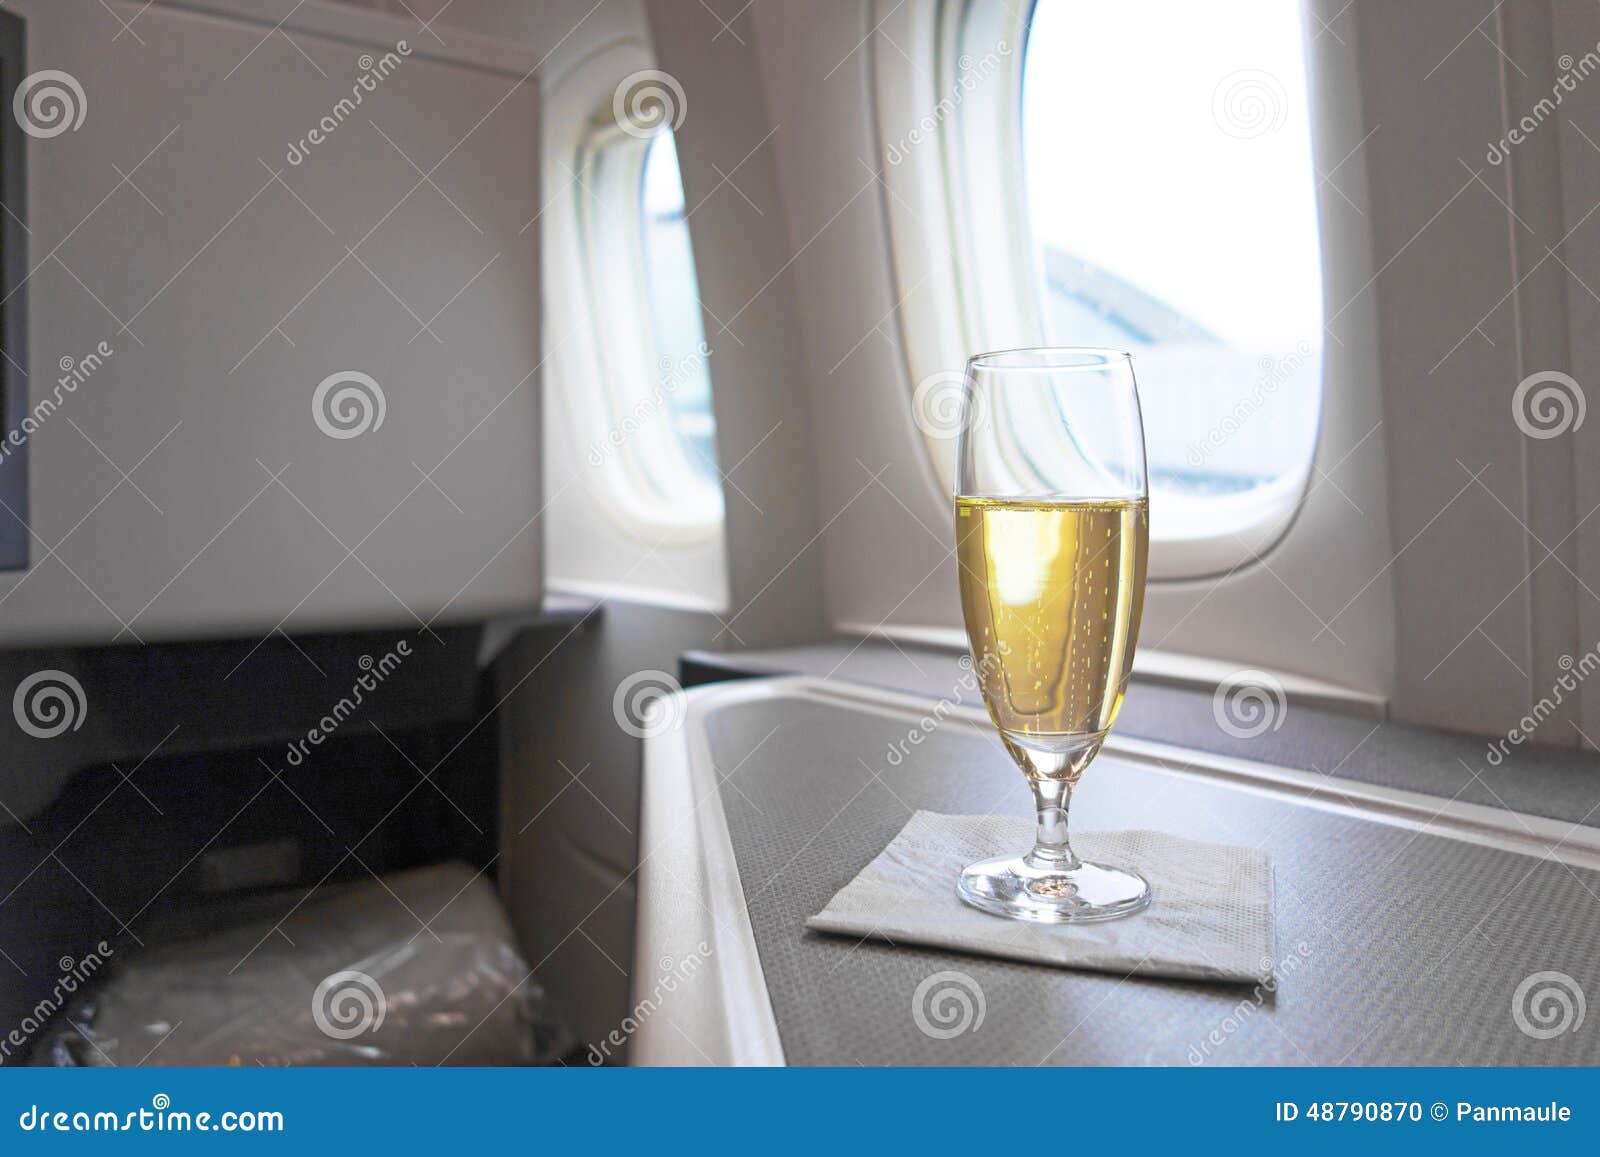 Шампанское в самолете можно. Шампанское в бизнес классе Аэрофлот. Бизнес класс в самолете с бокалом шампанского. Фужеры шампанского в самолете. Самолет бизнес класс шампанское.